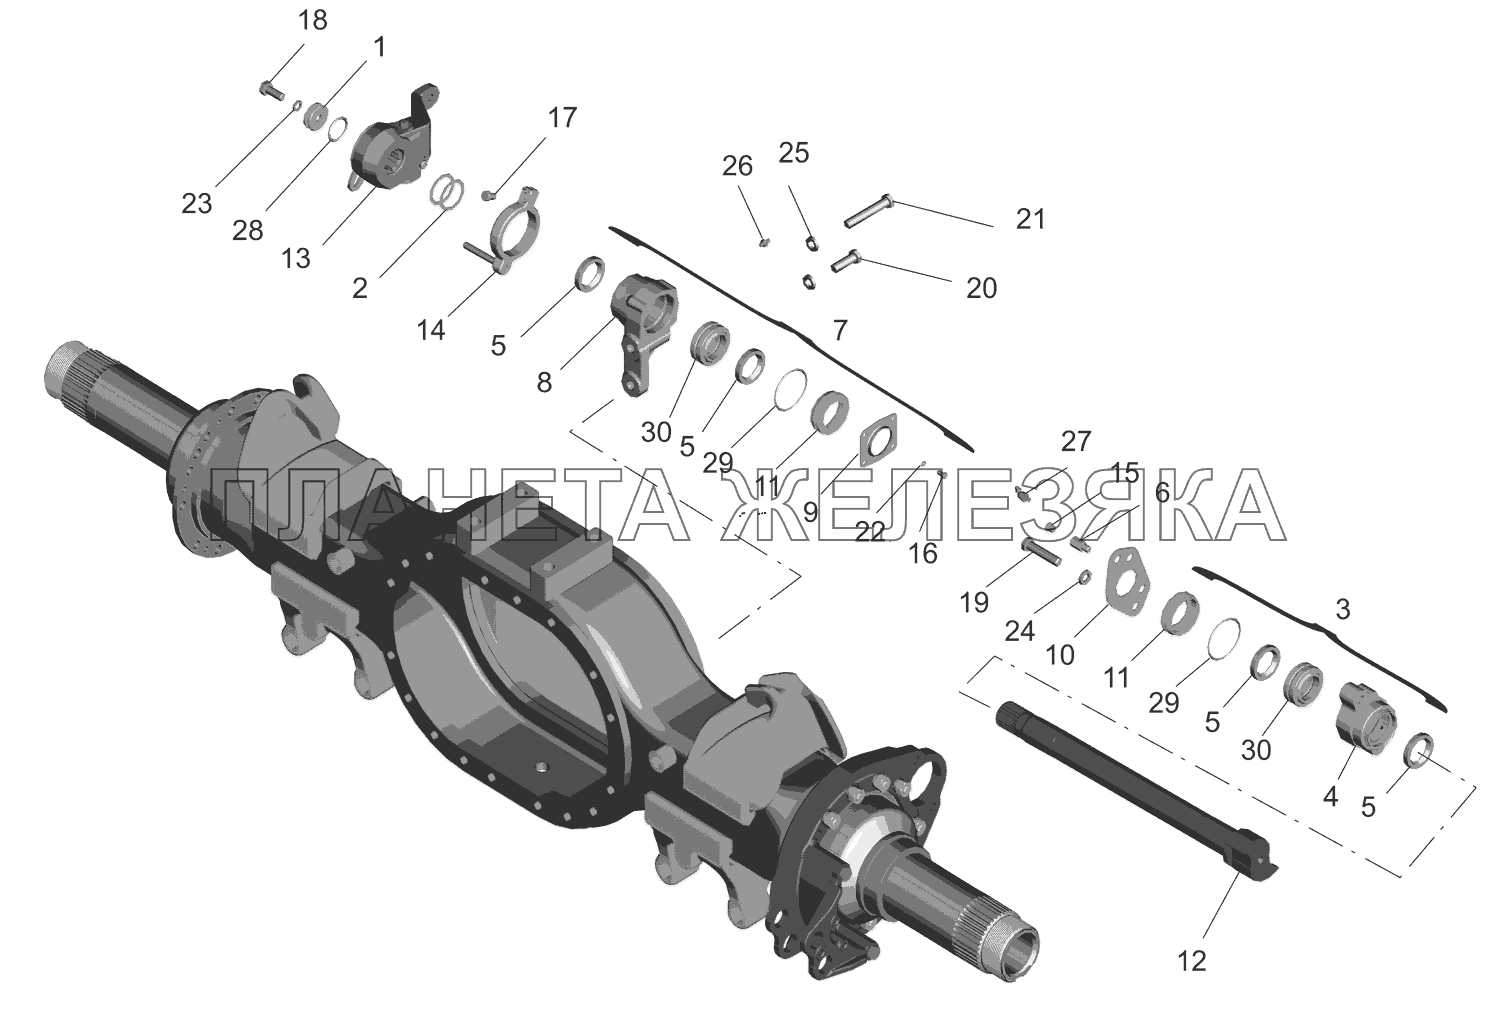 Привод тормозного механизма задних и средних колес МАЗ-651669-320 (340)